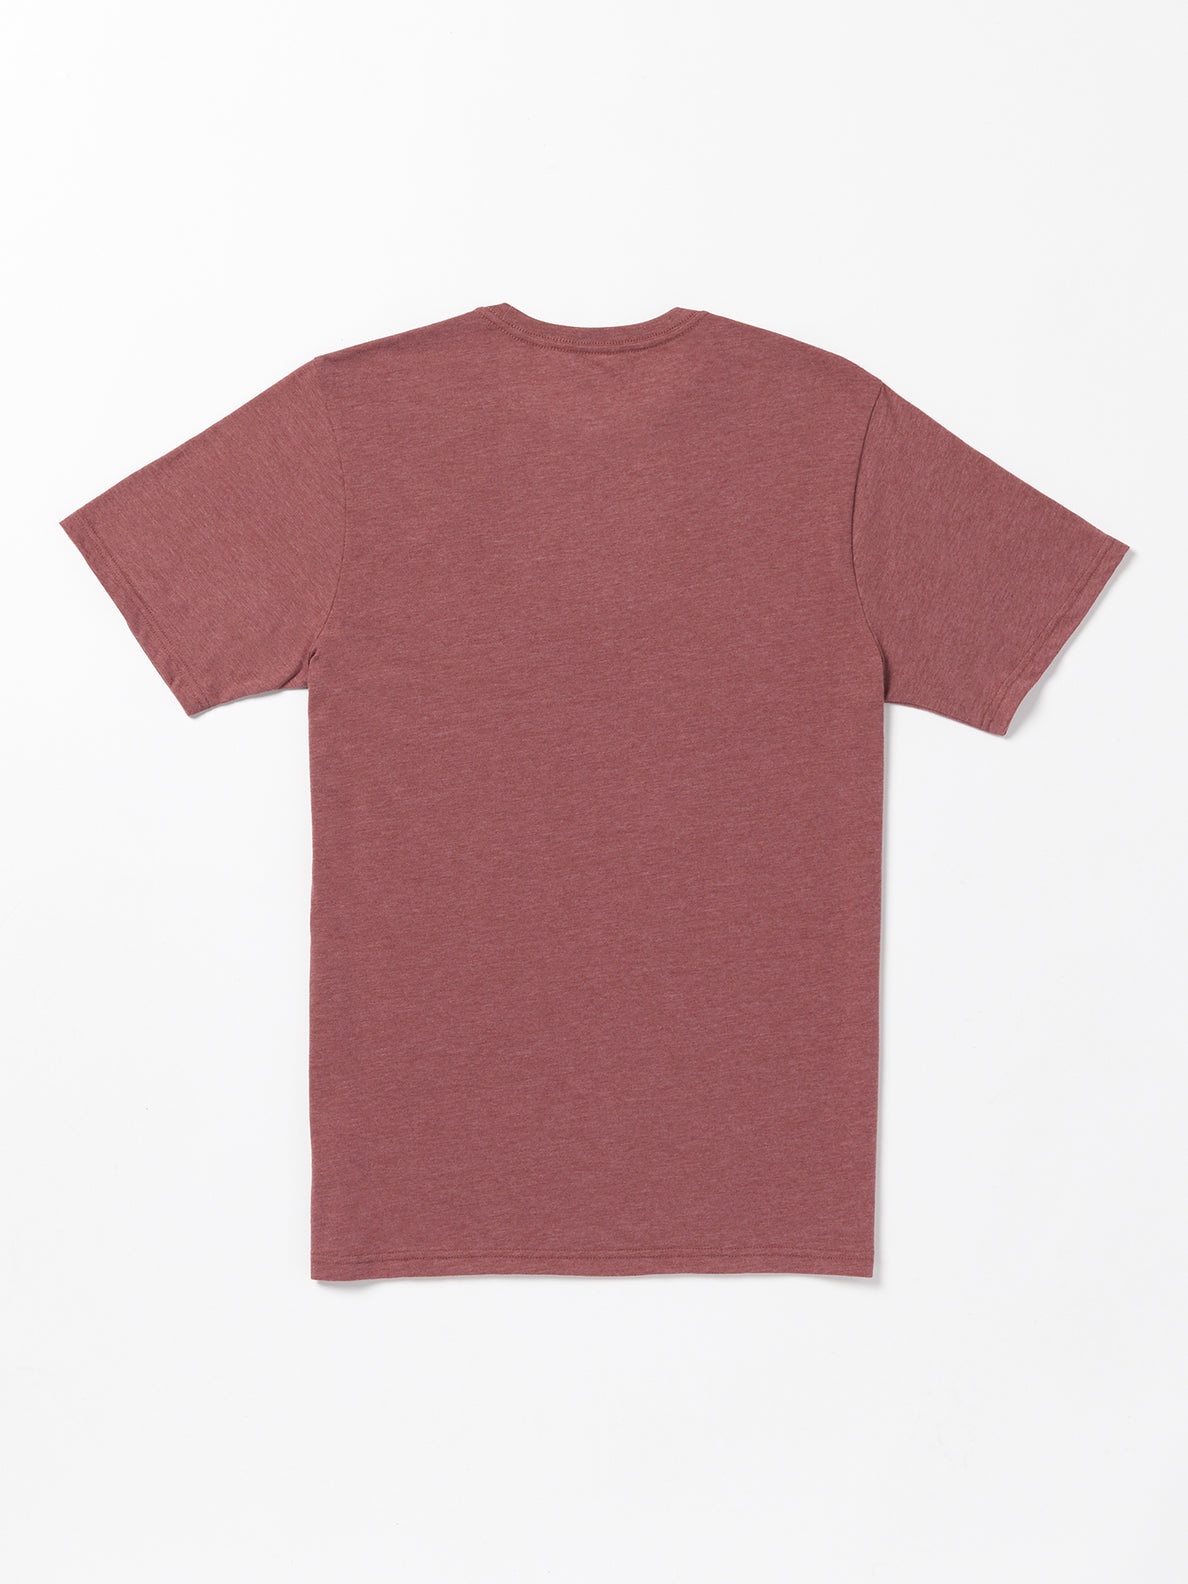 Ninetyfive Short Sleeve Tee Shirt - Oxblood Heather (A5732307_OBH) [B]